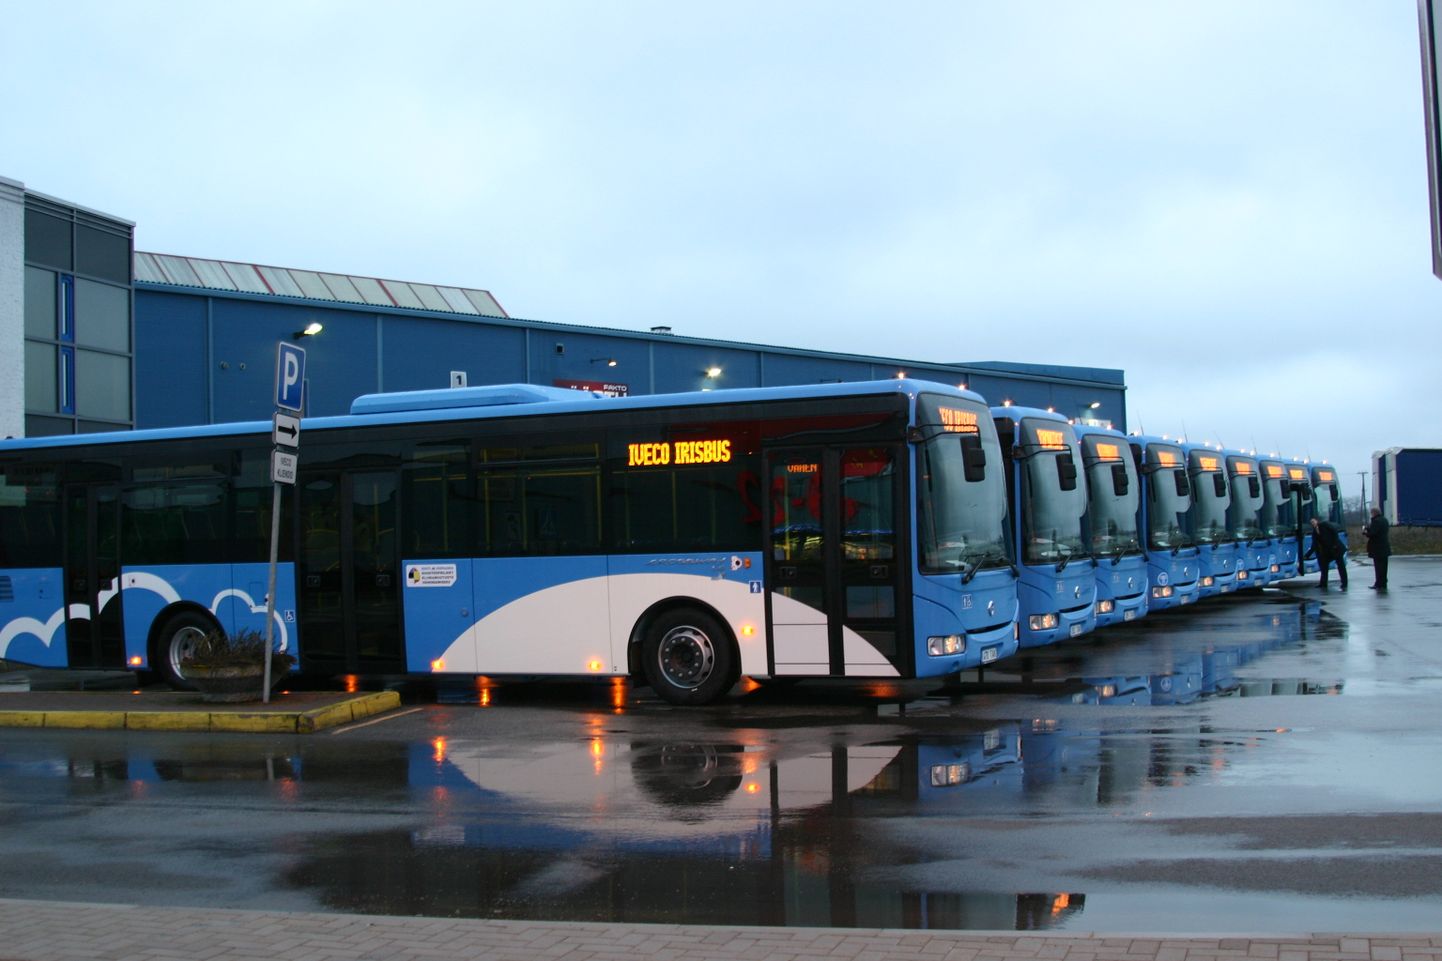 "Облачные" автобусы "Iveco Irisbus Crossway", приобретенные Эстонией немногим более десяти лет назад для обслуживания линий общественного транспорта.